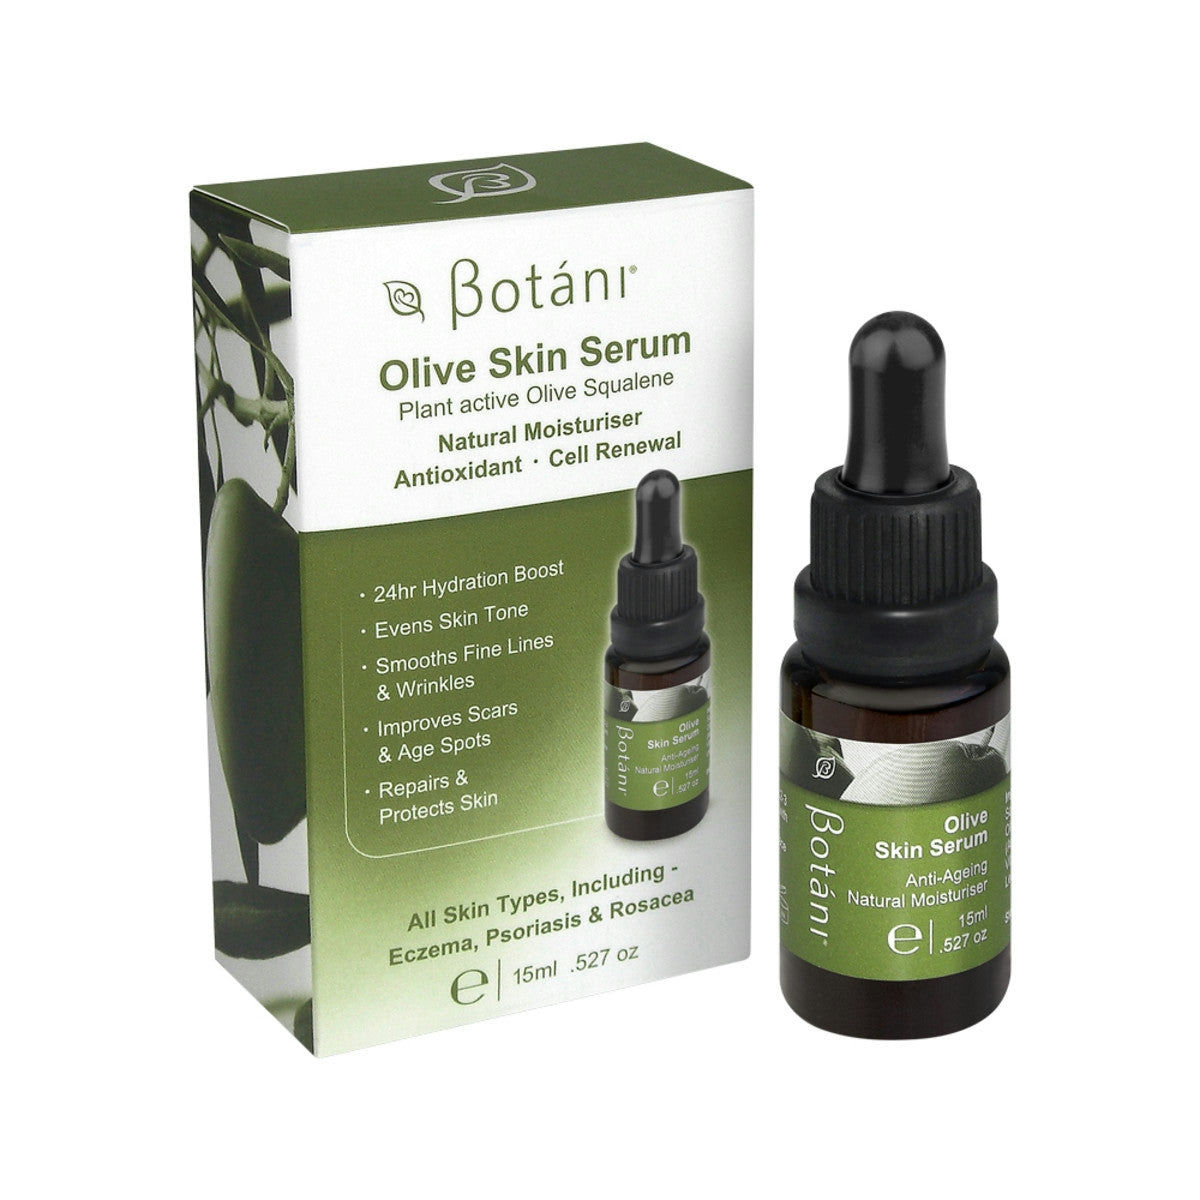 image of Botani Olive Skin Serum 15ml on white background 